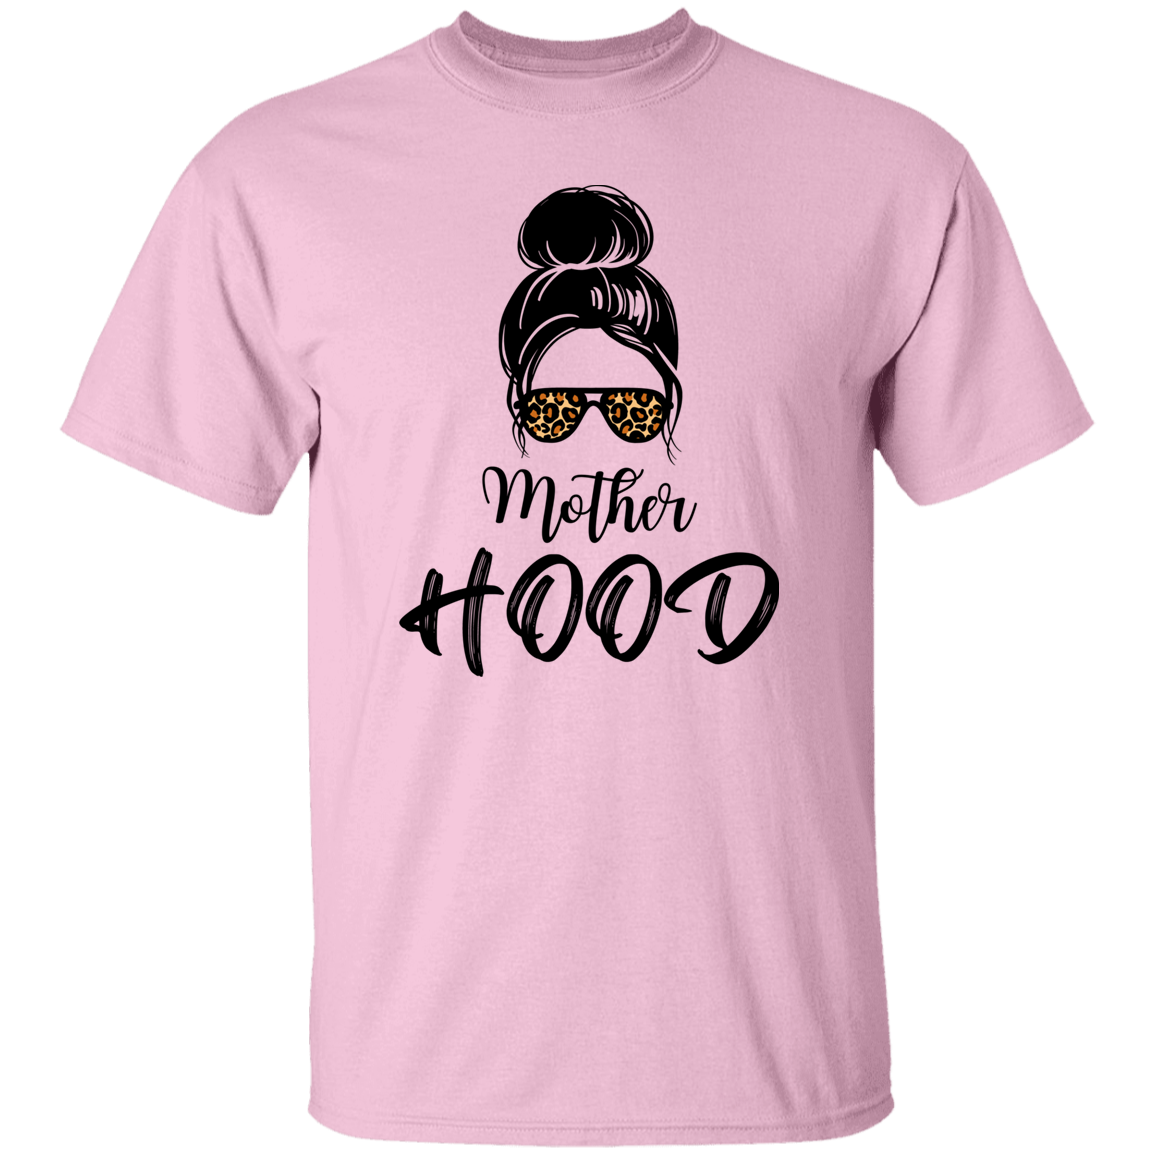 Mother HOOD T-Shirt